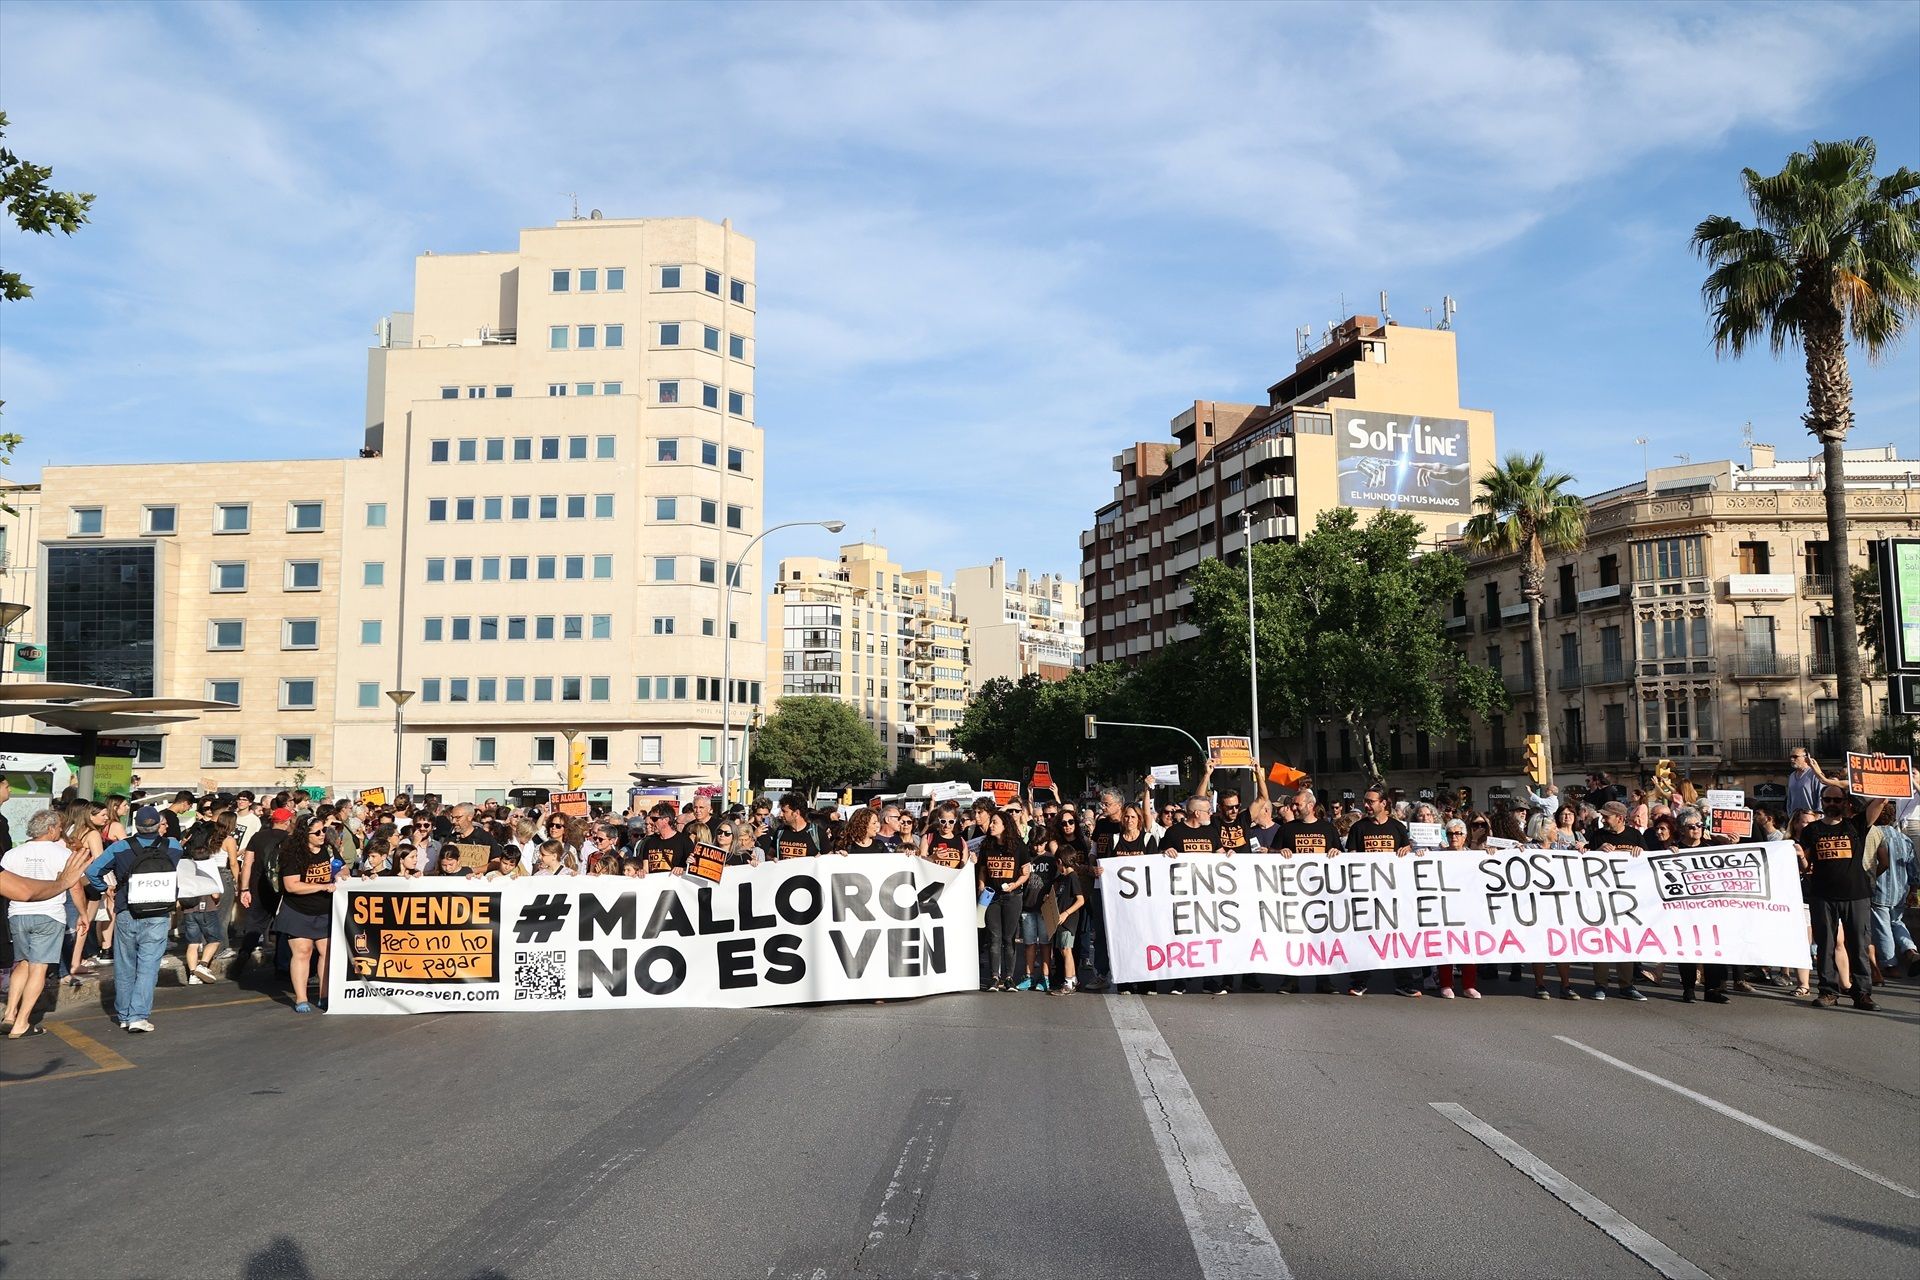 Unes 10.000 persones han omplert els carrers de Palma en contra de la massificació turística, segons la policia espanyola